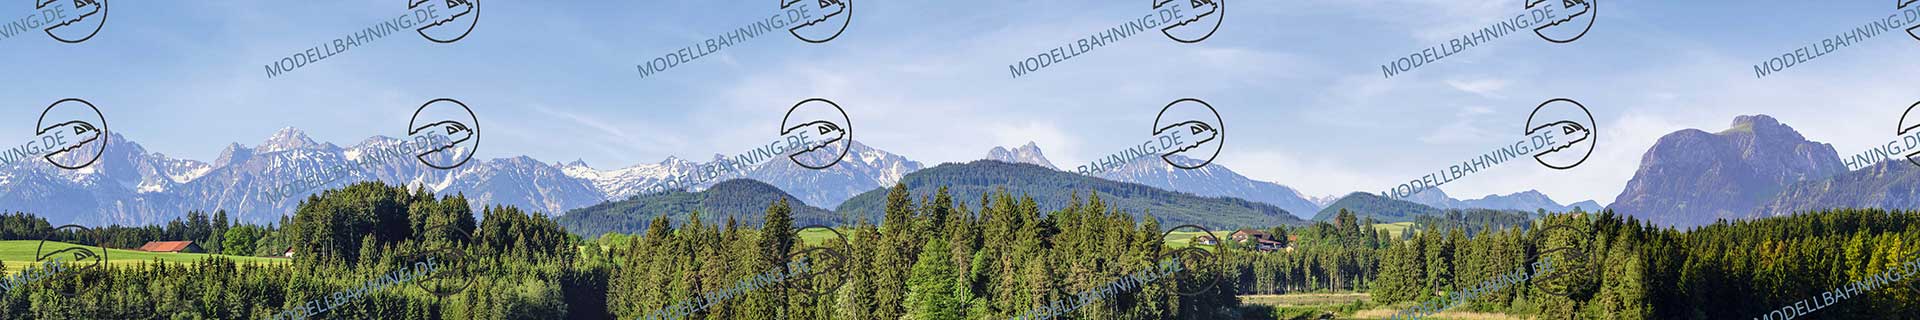 Bayern mit Alpenbergen Teil 3 – Modellbahn Hintergrund 300cm 2